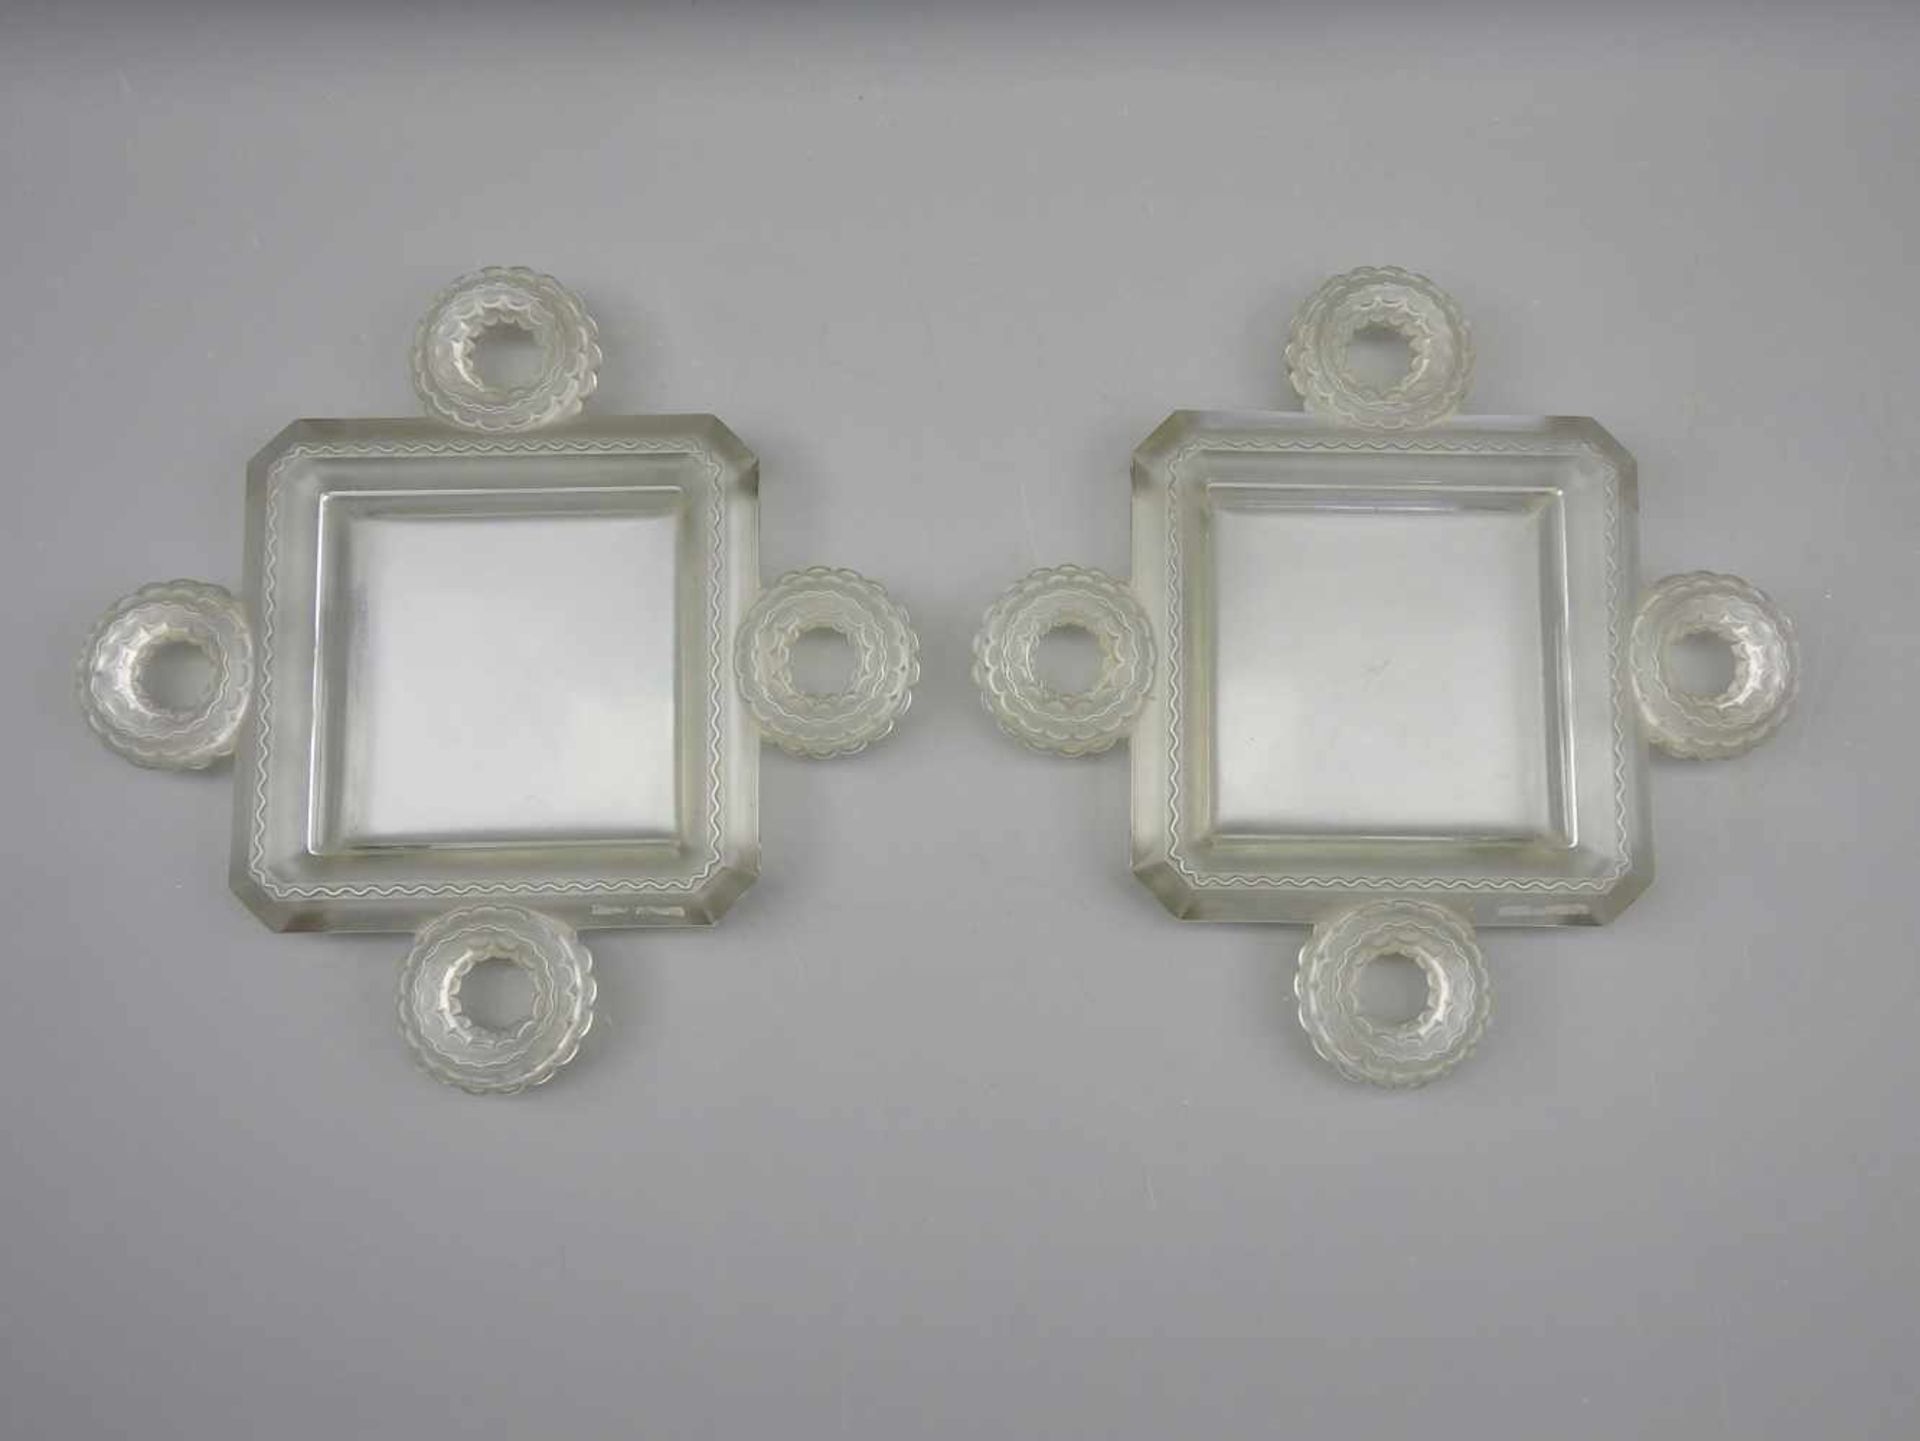 Lalique, Zwei quadratische SchalenSatiniertes Kristallglas, jeweils rückseitig "Lalique France"